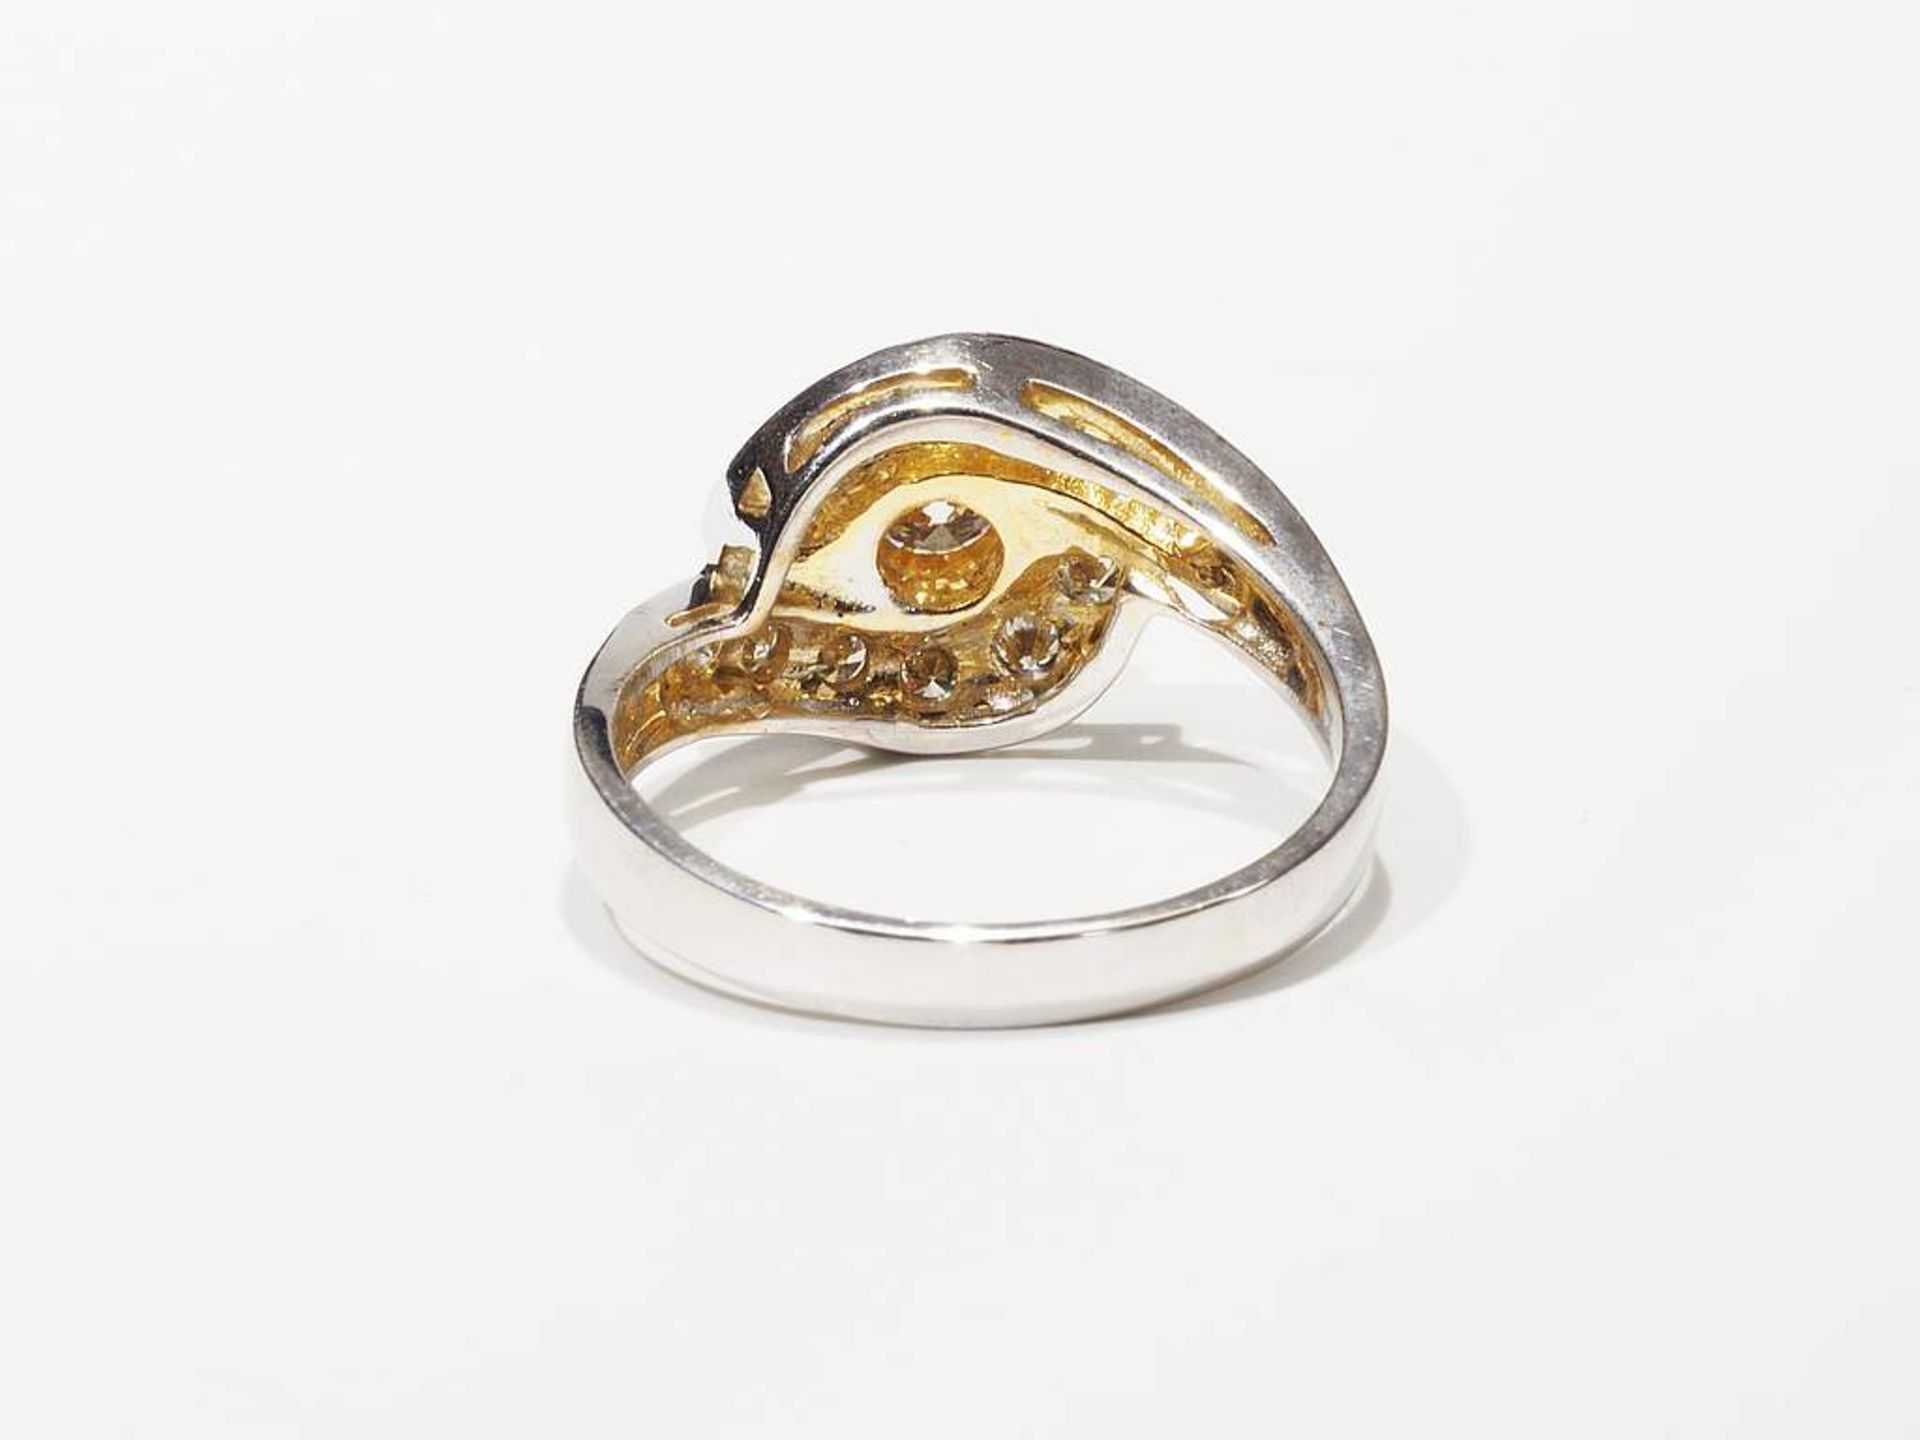 Ring mit Brillanten. 750er Weißgold. - Image 5 of 7